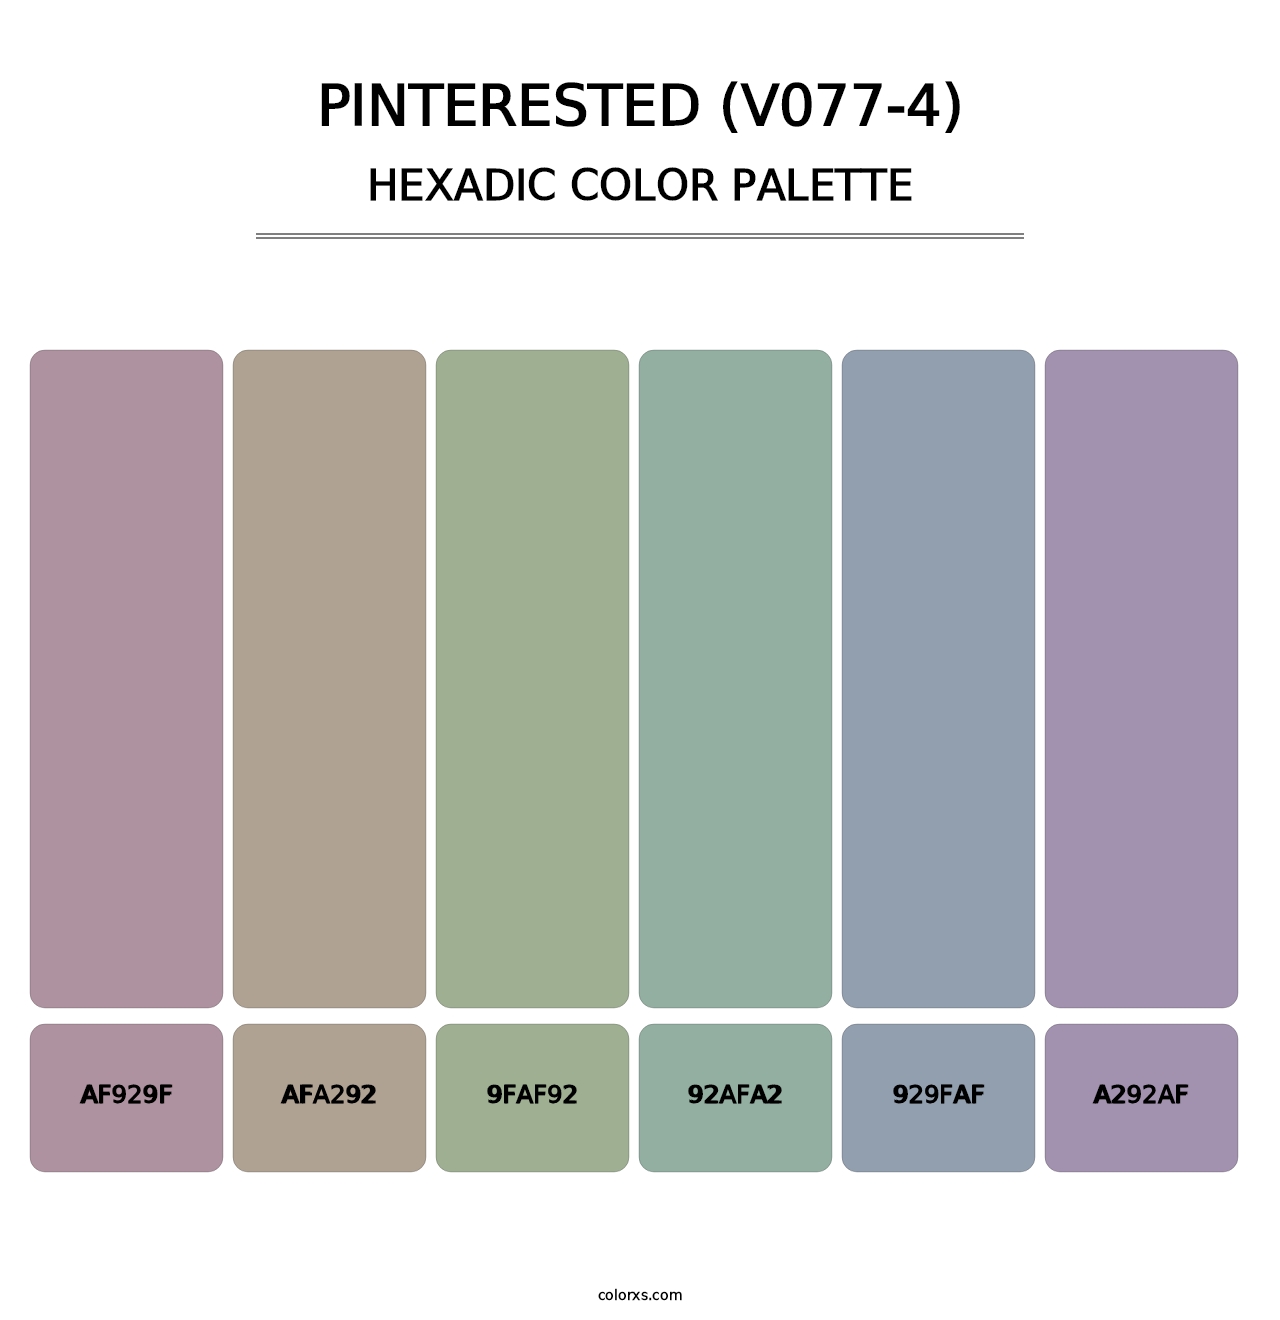 Pinterested (V077-4) - Hexadic Color Palette